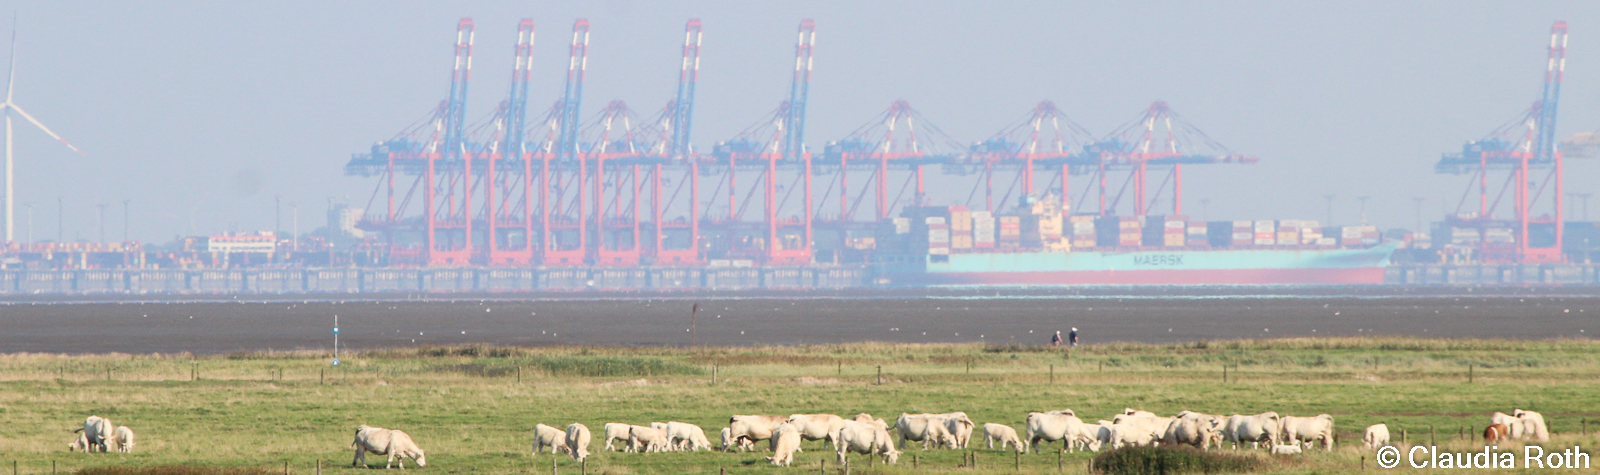 Salzwiese mit Kühen - Hafen im Hintergrund